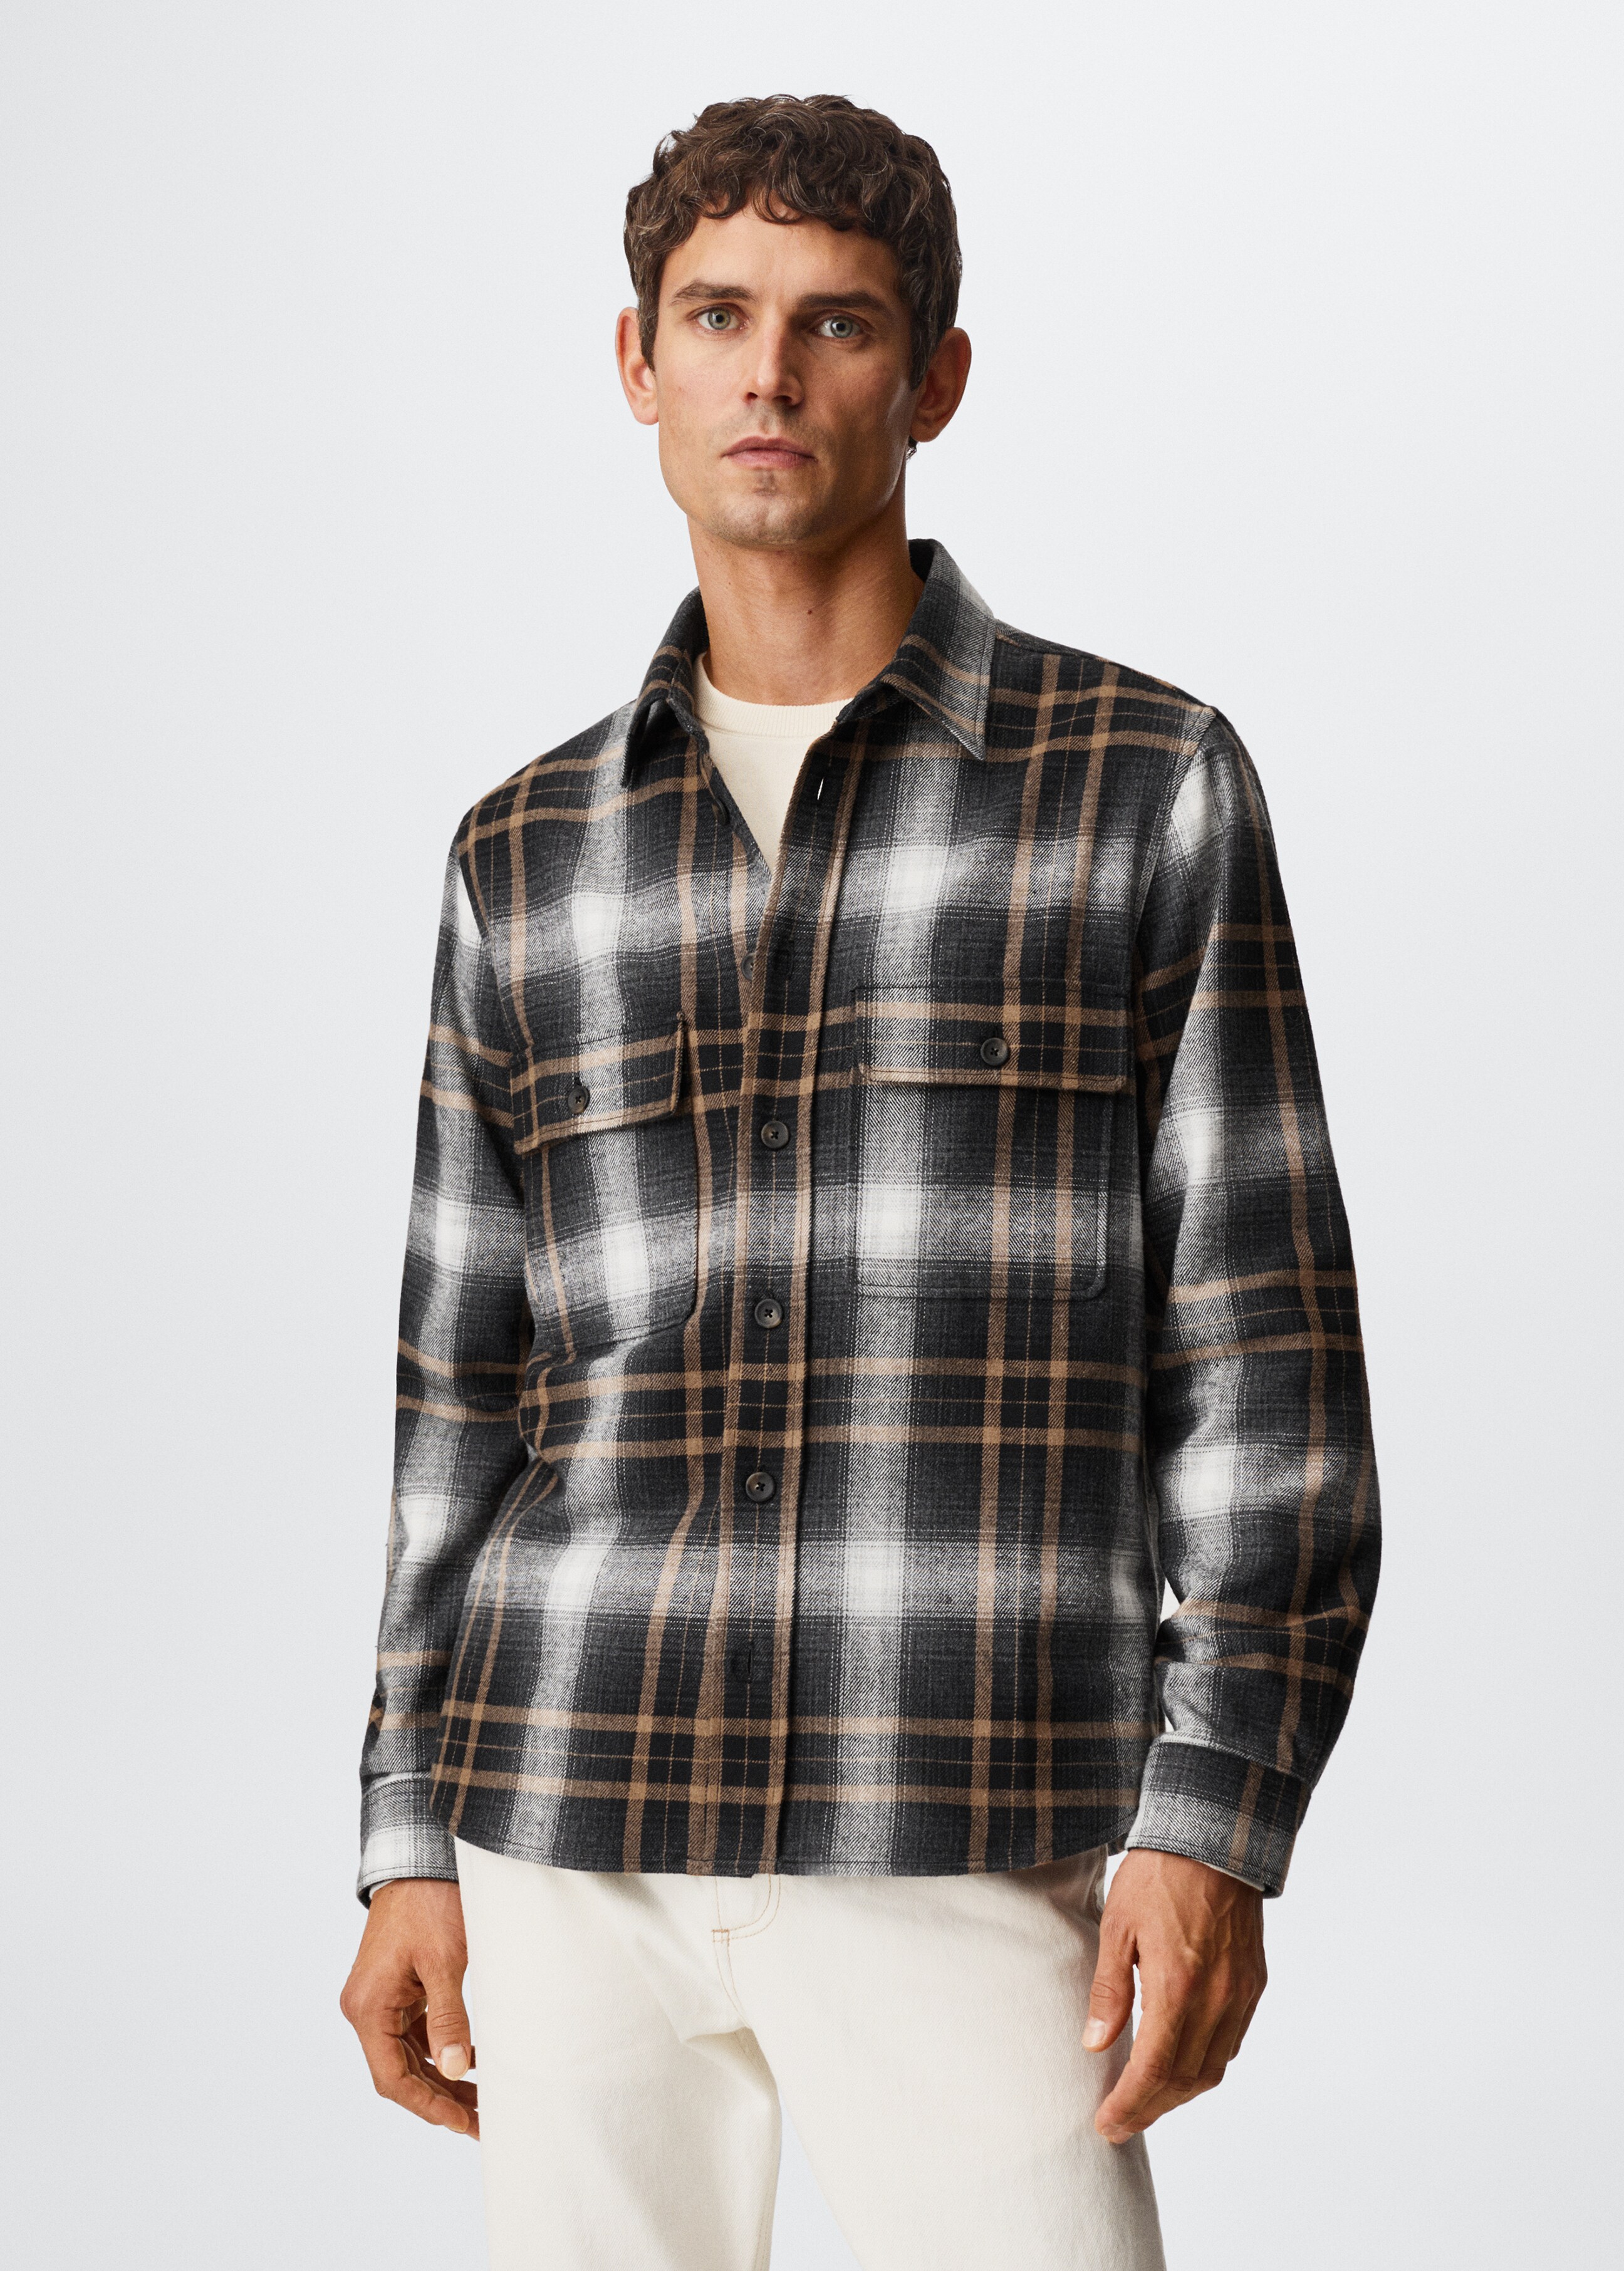 Checked flannel shirt - Medium plane